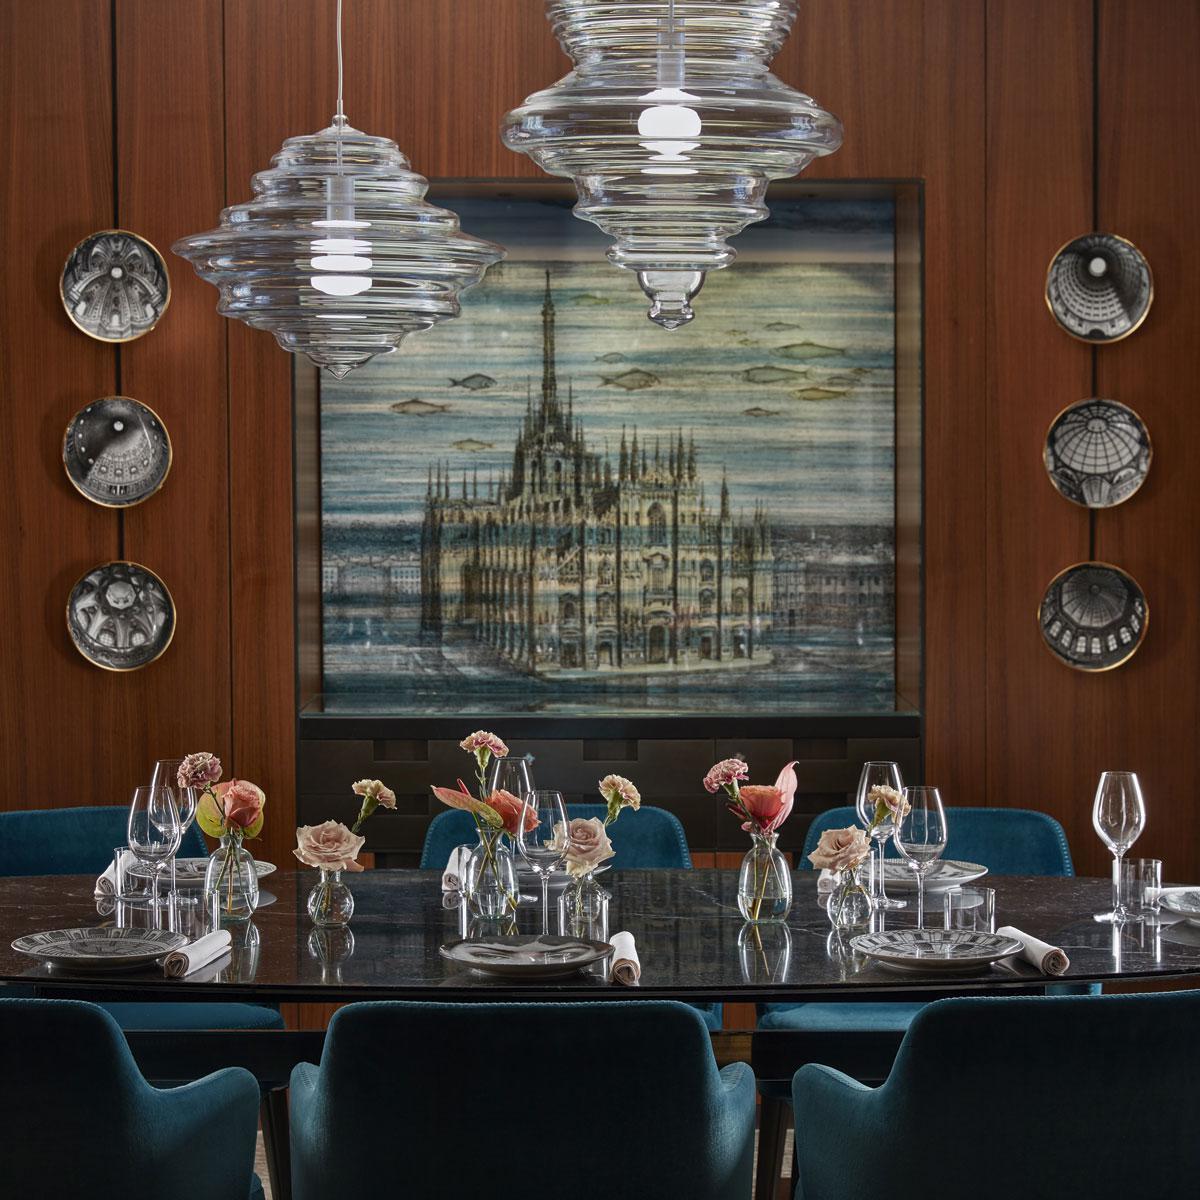 De private dining room Duomo in het Milanese hotel Mandarin Oriental werd ingericht door Atelier Fornasetti. Aan de muur de serie Cupole d'Italia, ontworpen door de Italiaanse ontwerper Piero Fornasetti in de jaren 60.